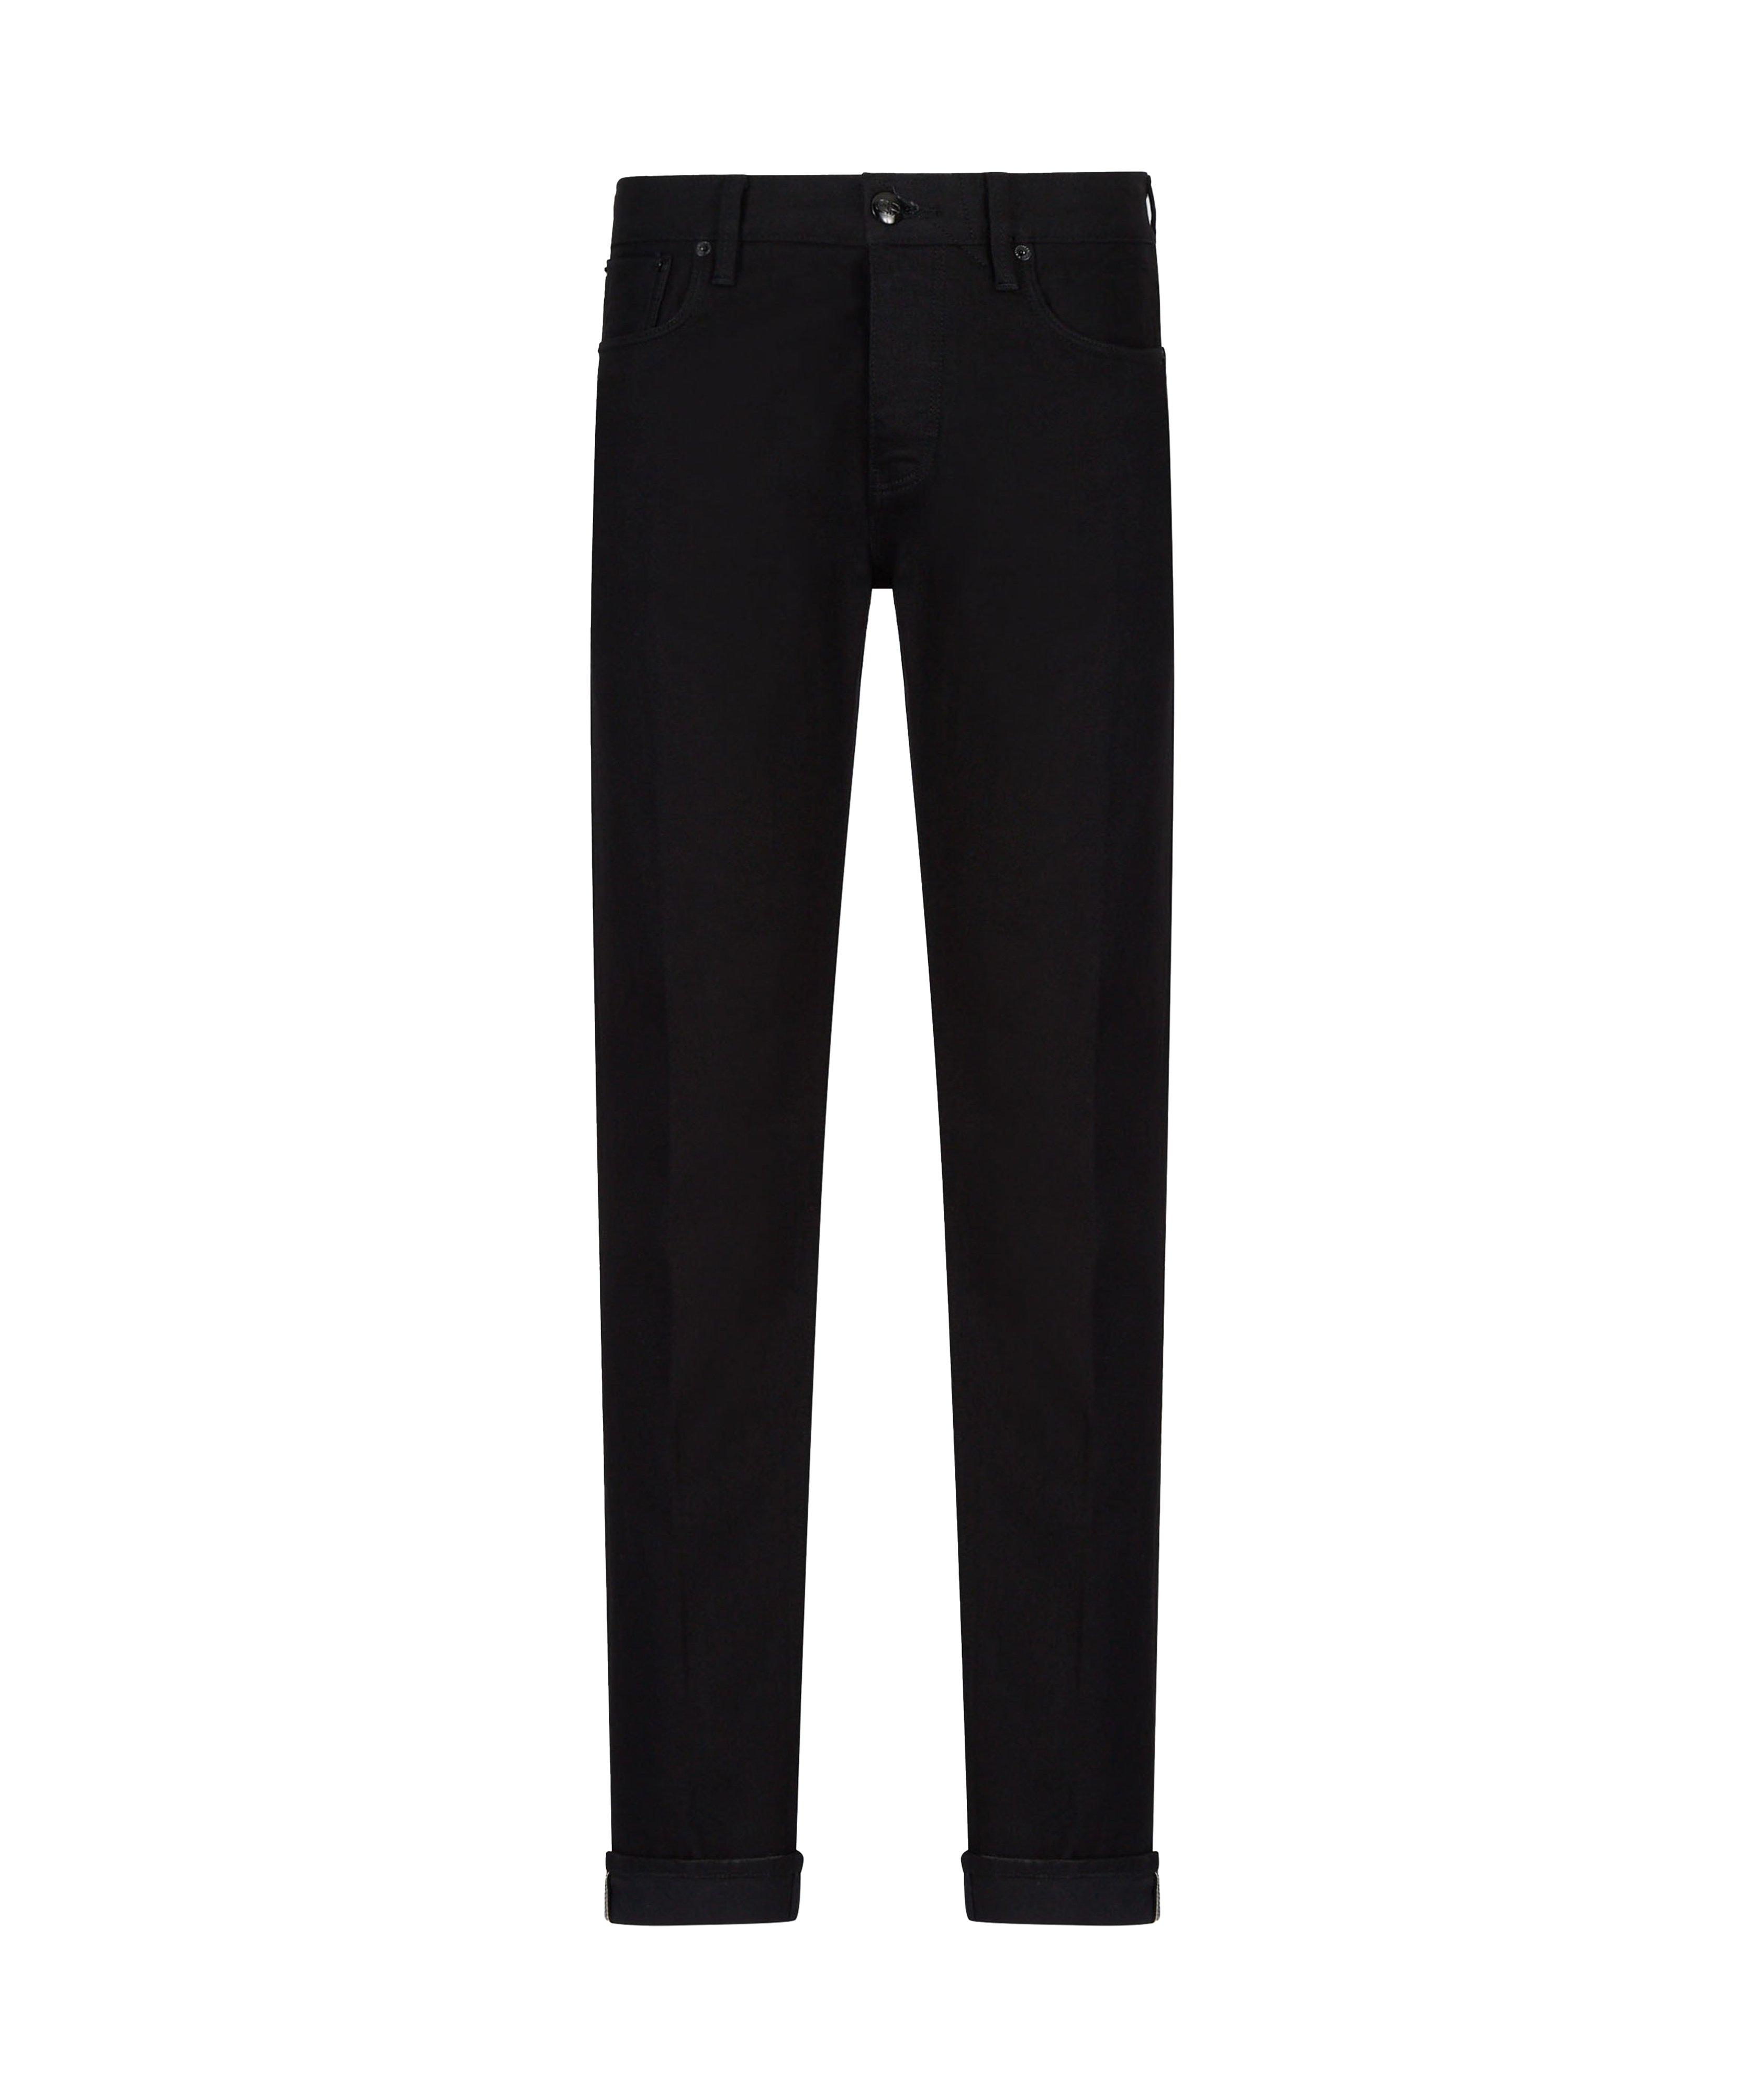 Slim Fit J75 Black Wash Denim jeans image 0